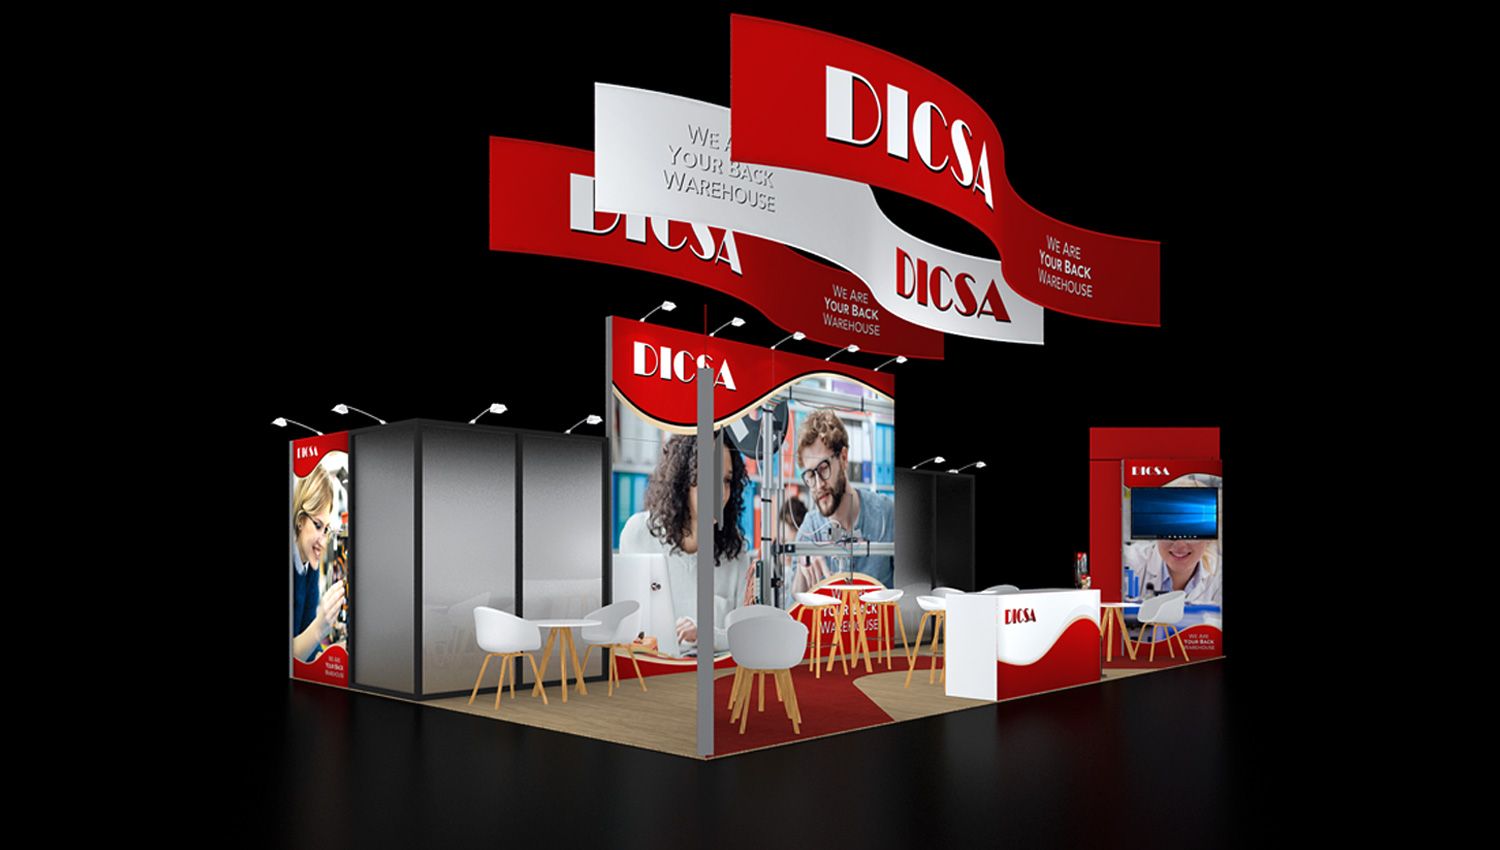 Exhibition Design Agency